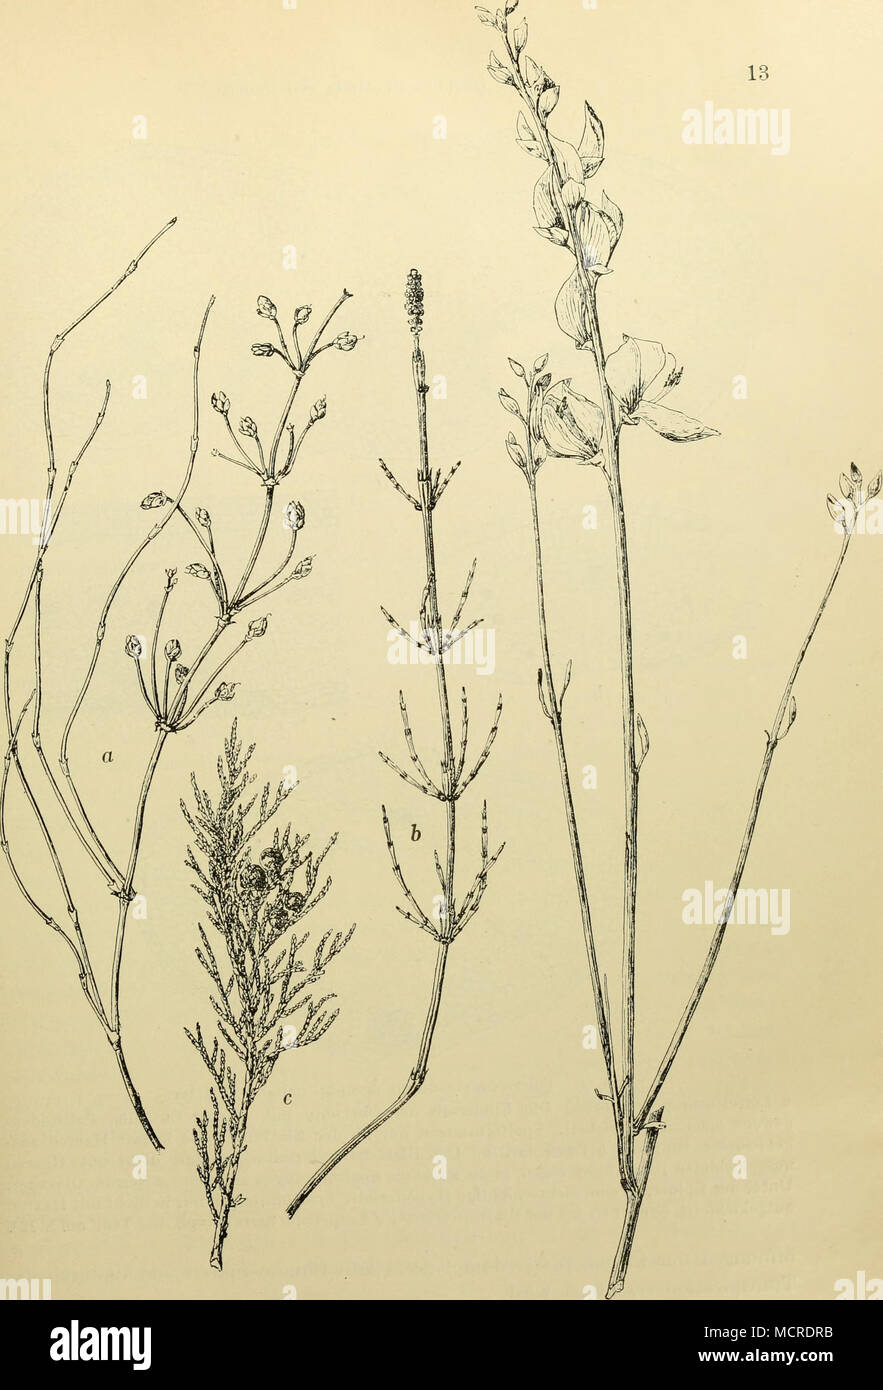 A,bb. 2. Xerophil gehaute Pflanzen mit starker Reduktion der Laubblätter  Ephedra distachya. a. Die Blätter sind auf den Stengelknoten gegenständige  Schüppchen un reduziert Equisetum palustre, b Den Laubblättern gezahnten «  StengelFcheiden